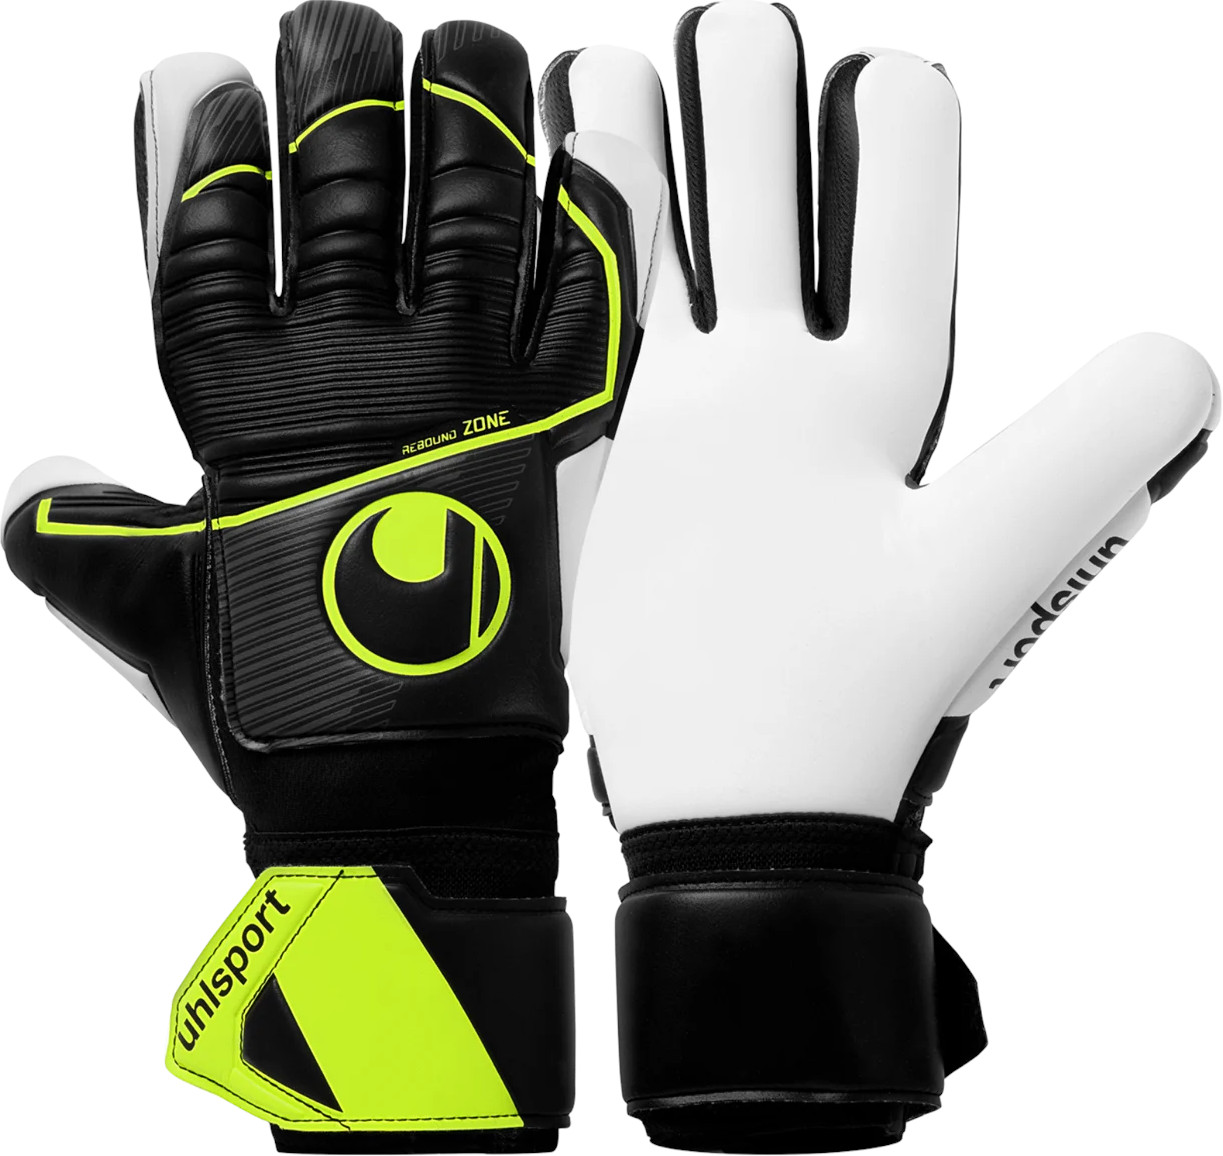 Vratarske rokavice Uhlsport Supersoft HN Flex Frame Goalkeeper Gloves